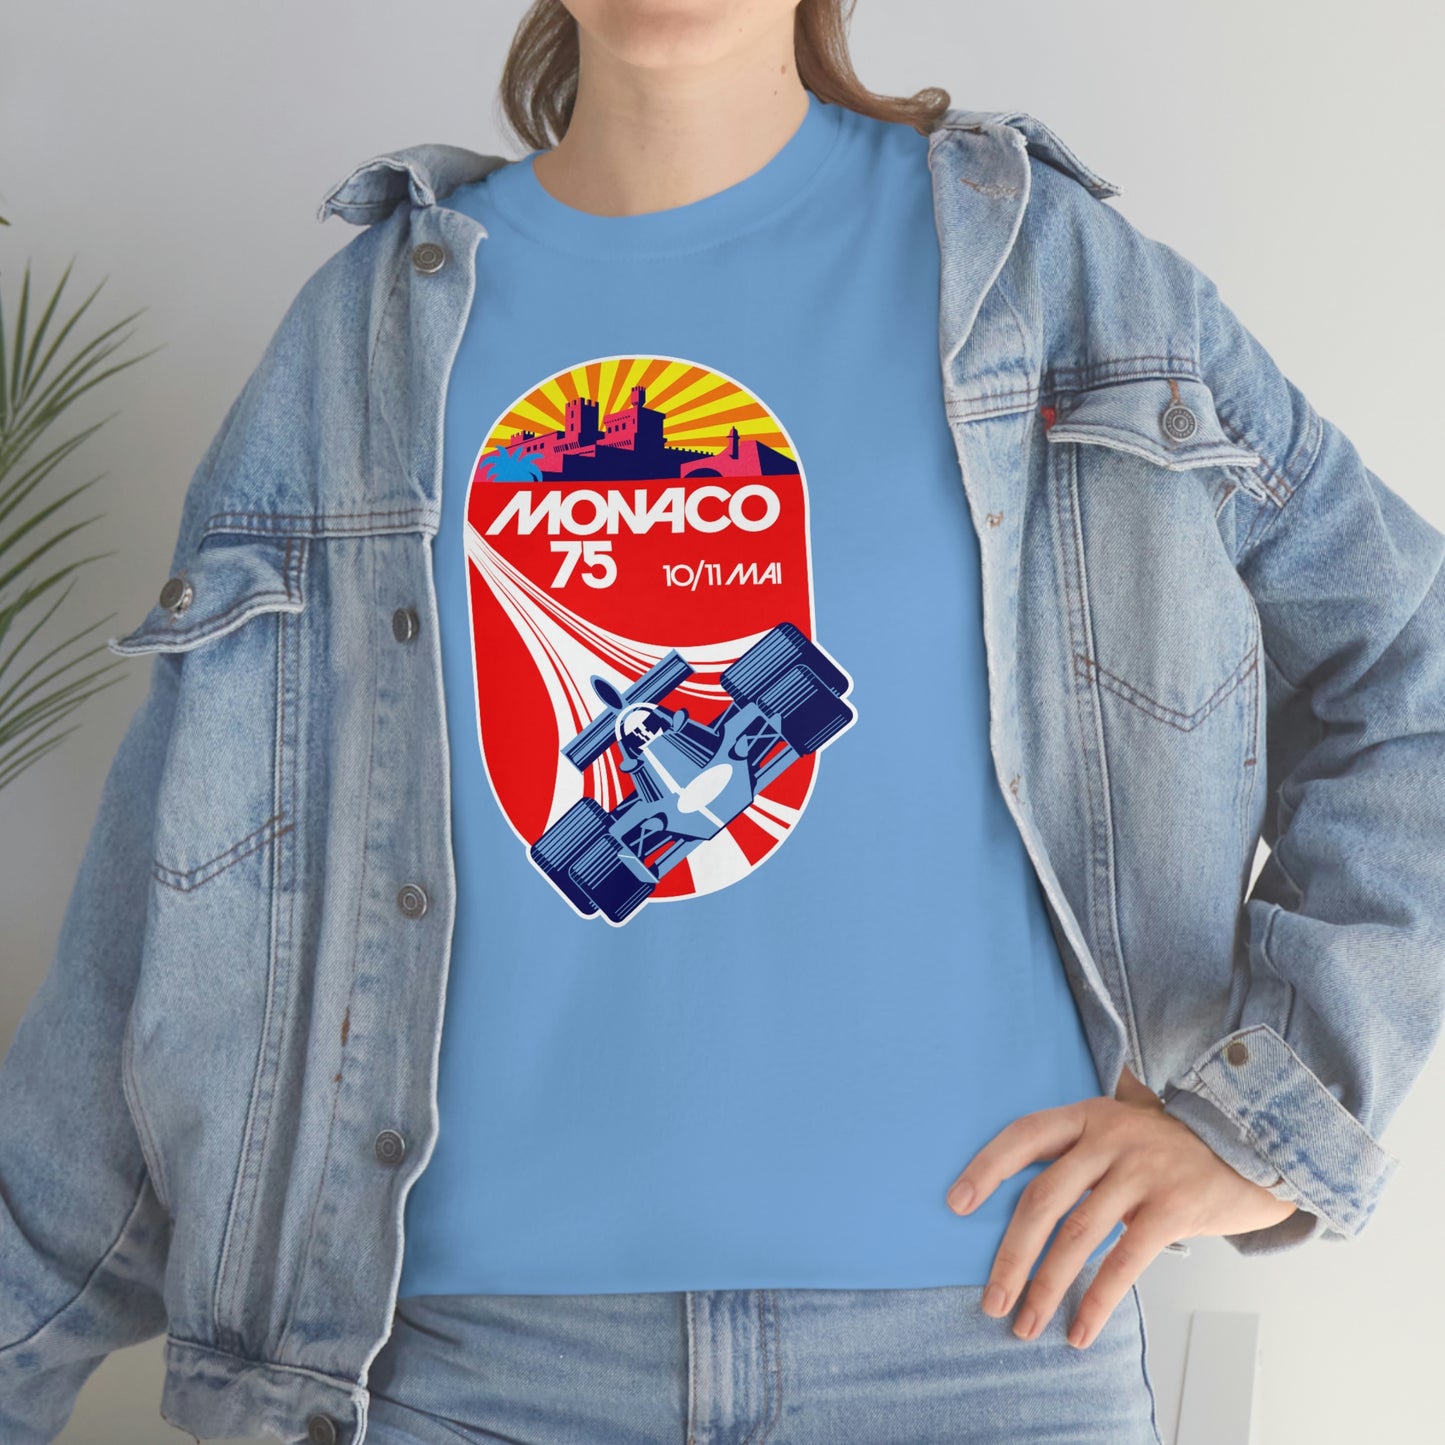 Monaco Grand Prix '75 T-Shirt